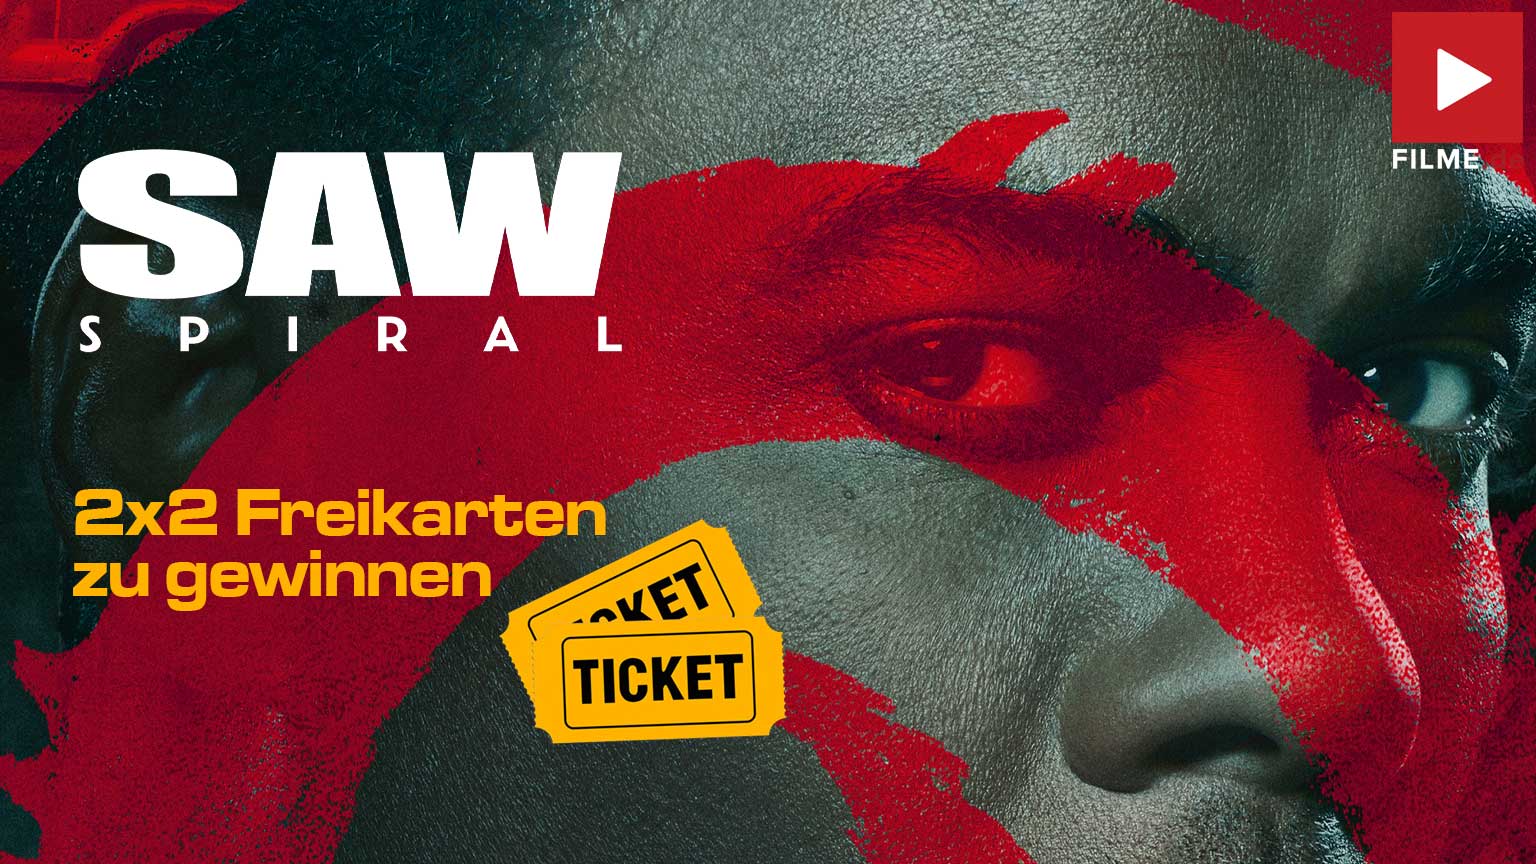 SAW: SPIRAL Film 2021 Gewinnspiel Tickets Kino Artikelbild